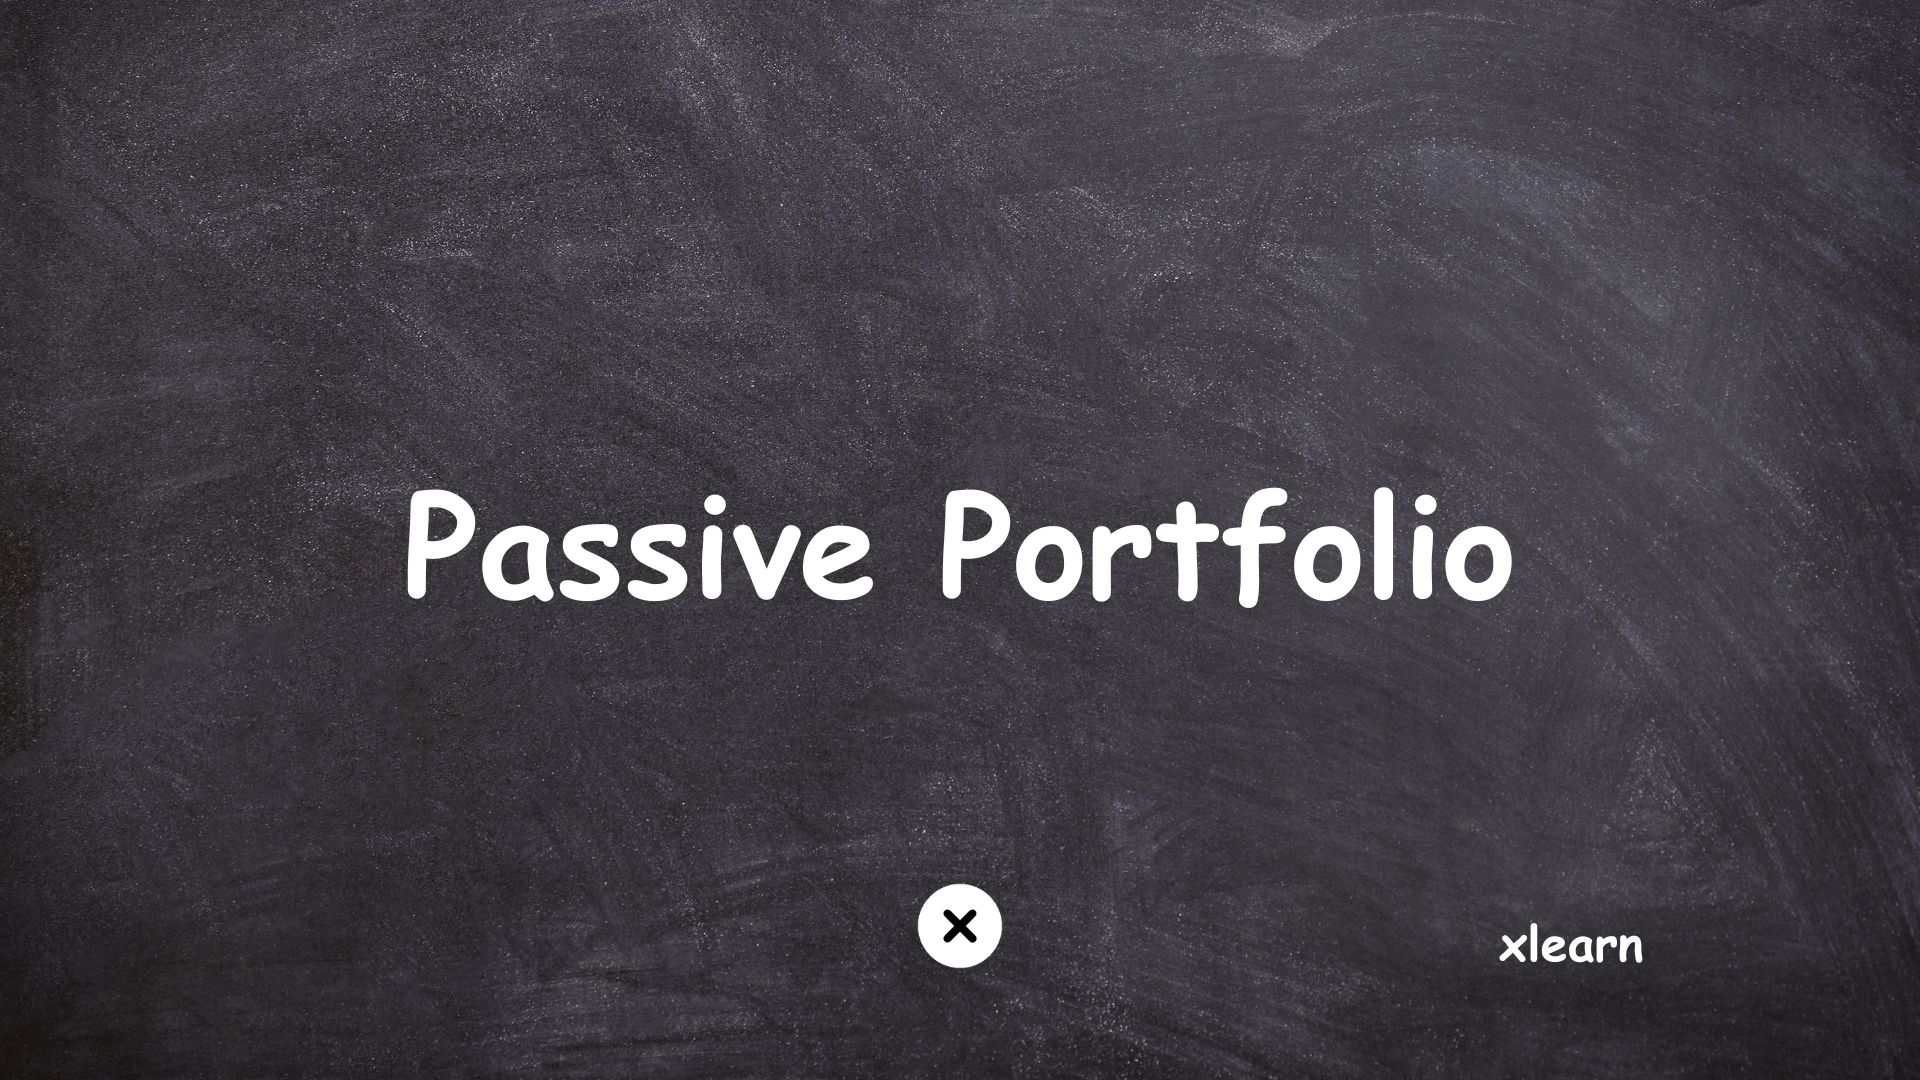 Passive portfolio management